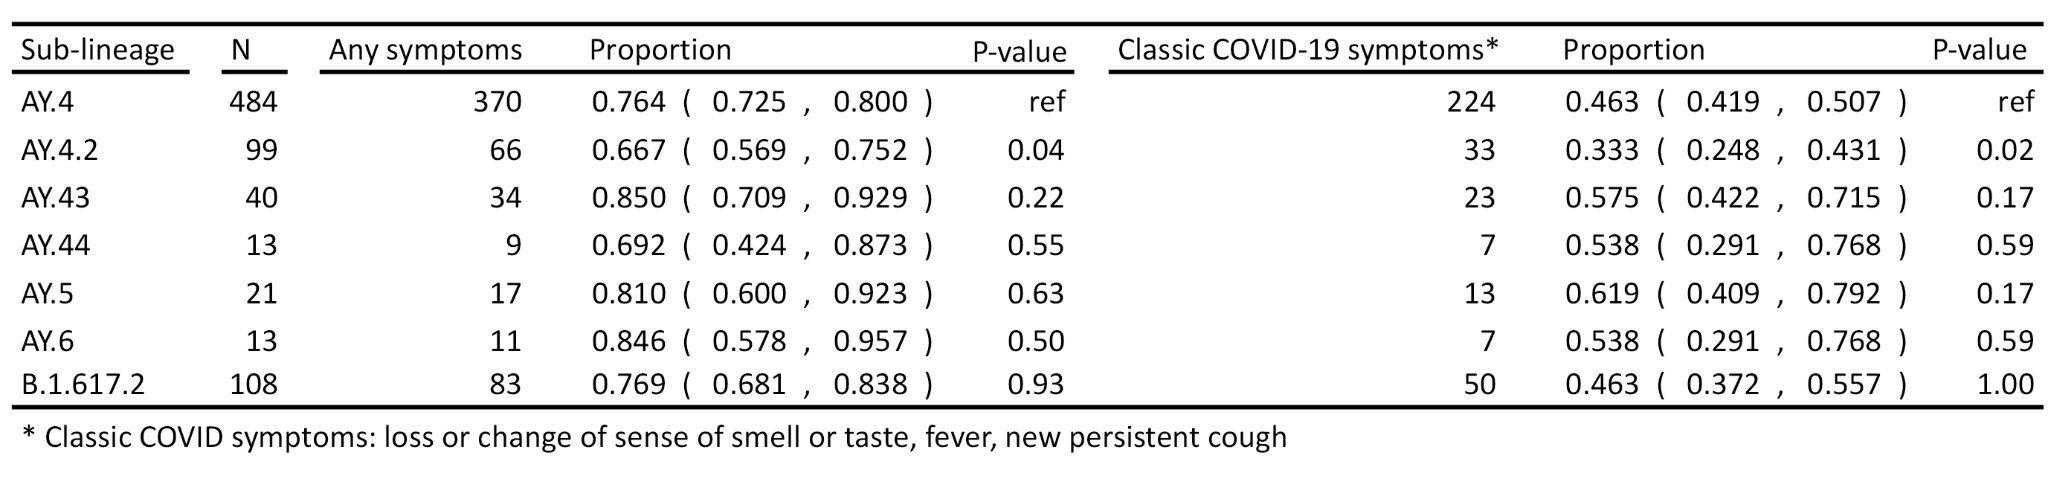 Субвариант дельта-штамма AY.4.2 привел к меньшему числу «симптомных» случаев Covid-19